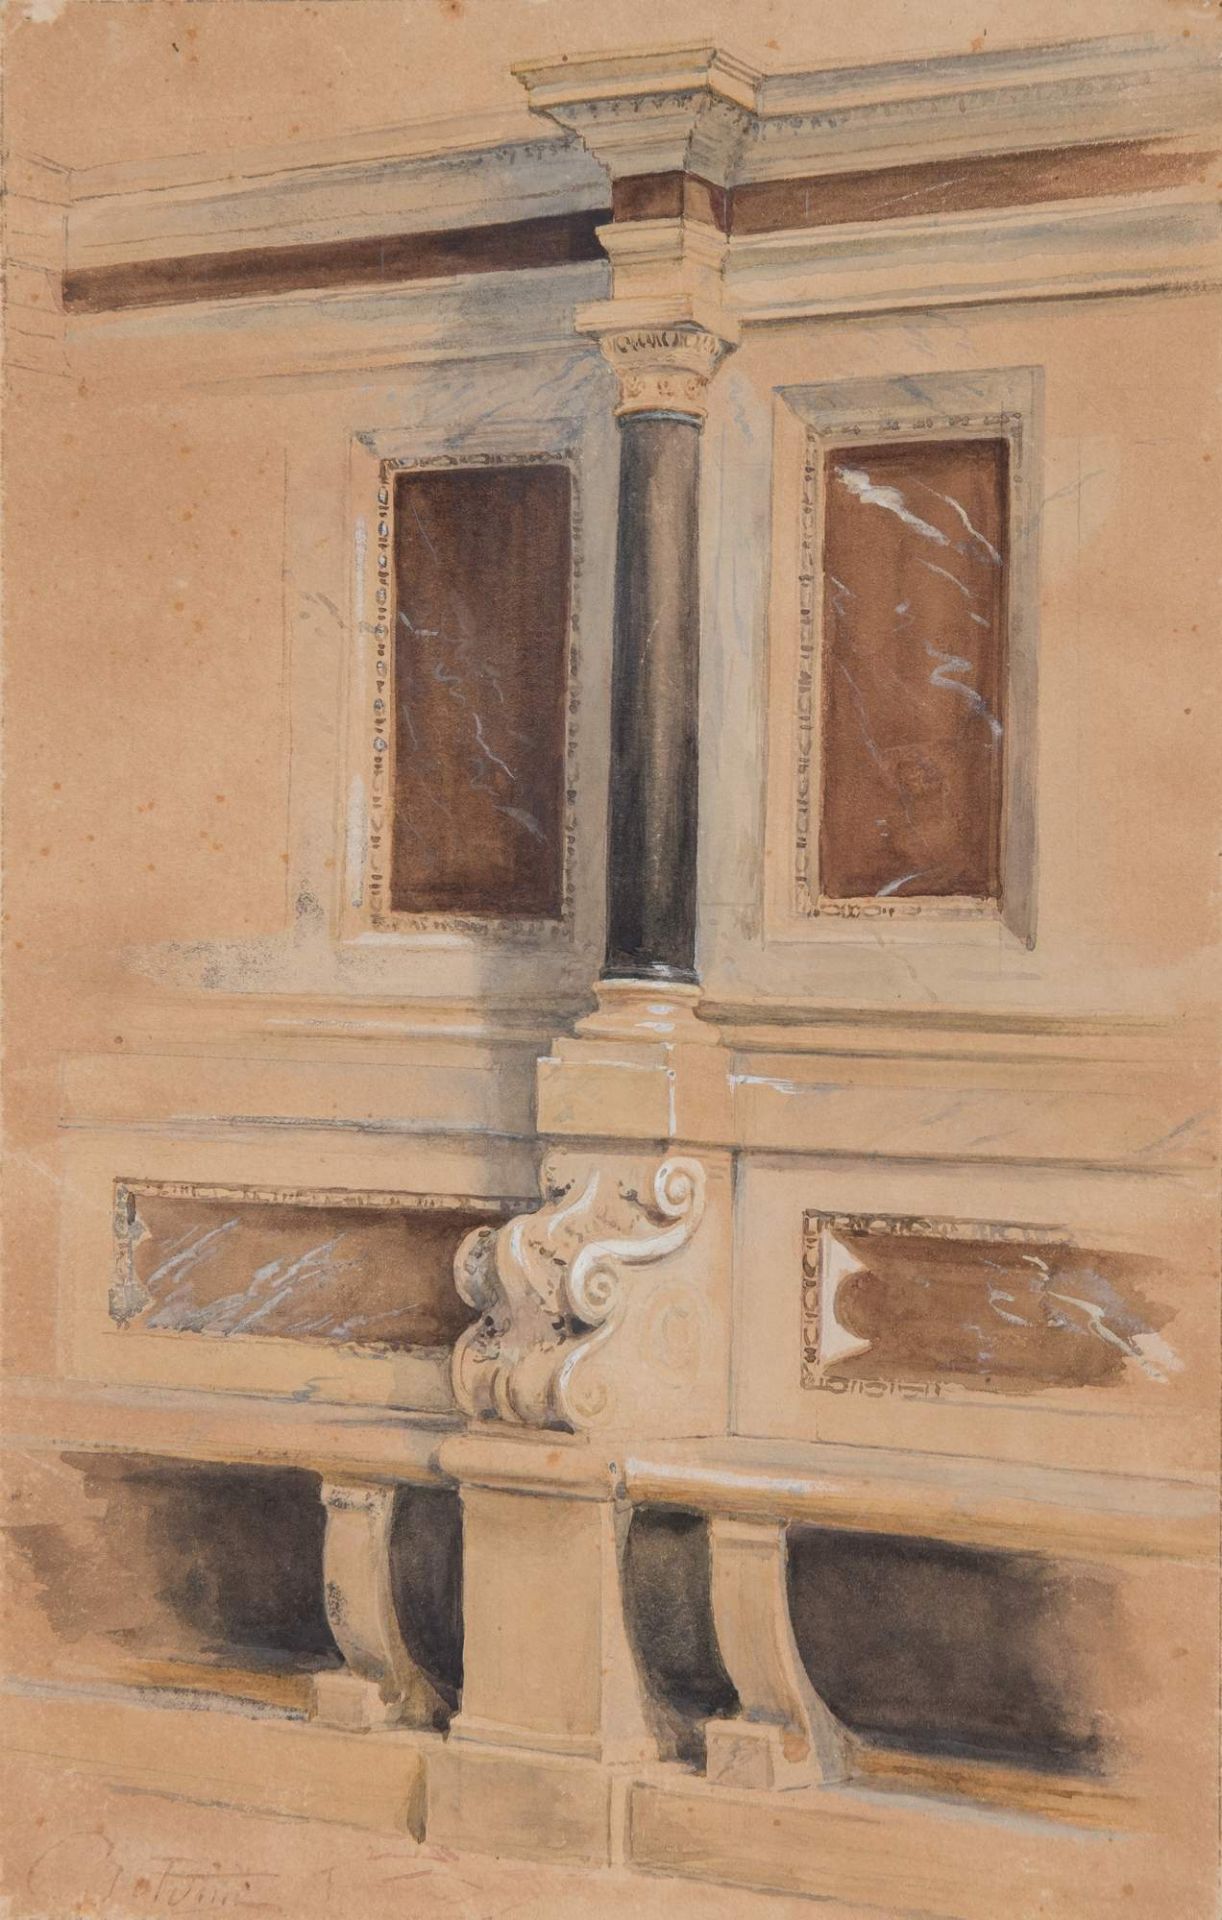 GIOVANNI BOLDINI (Ferrara 1842 - Parigi 1931), attr. “Cantoria, studio di architettura”.